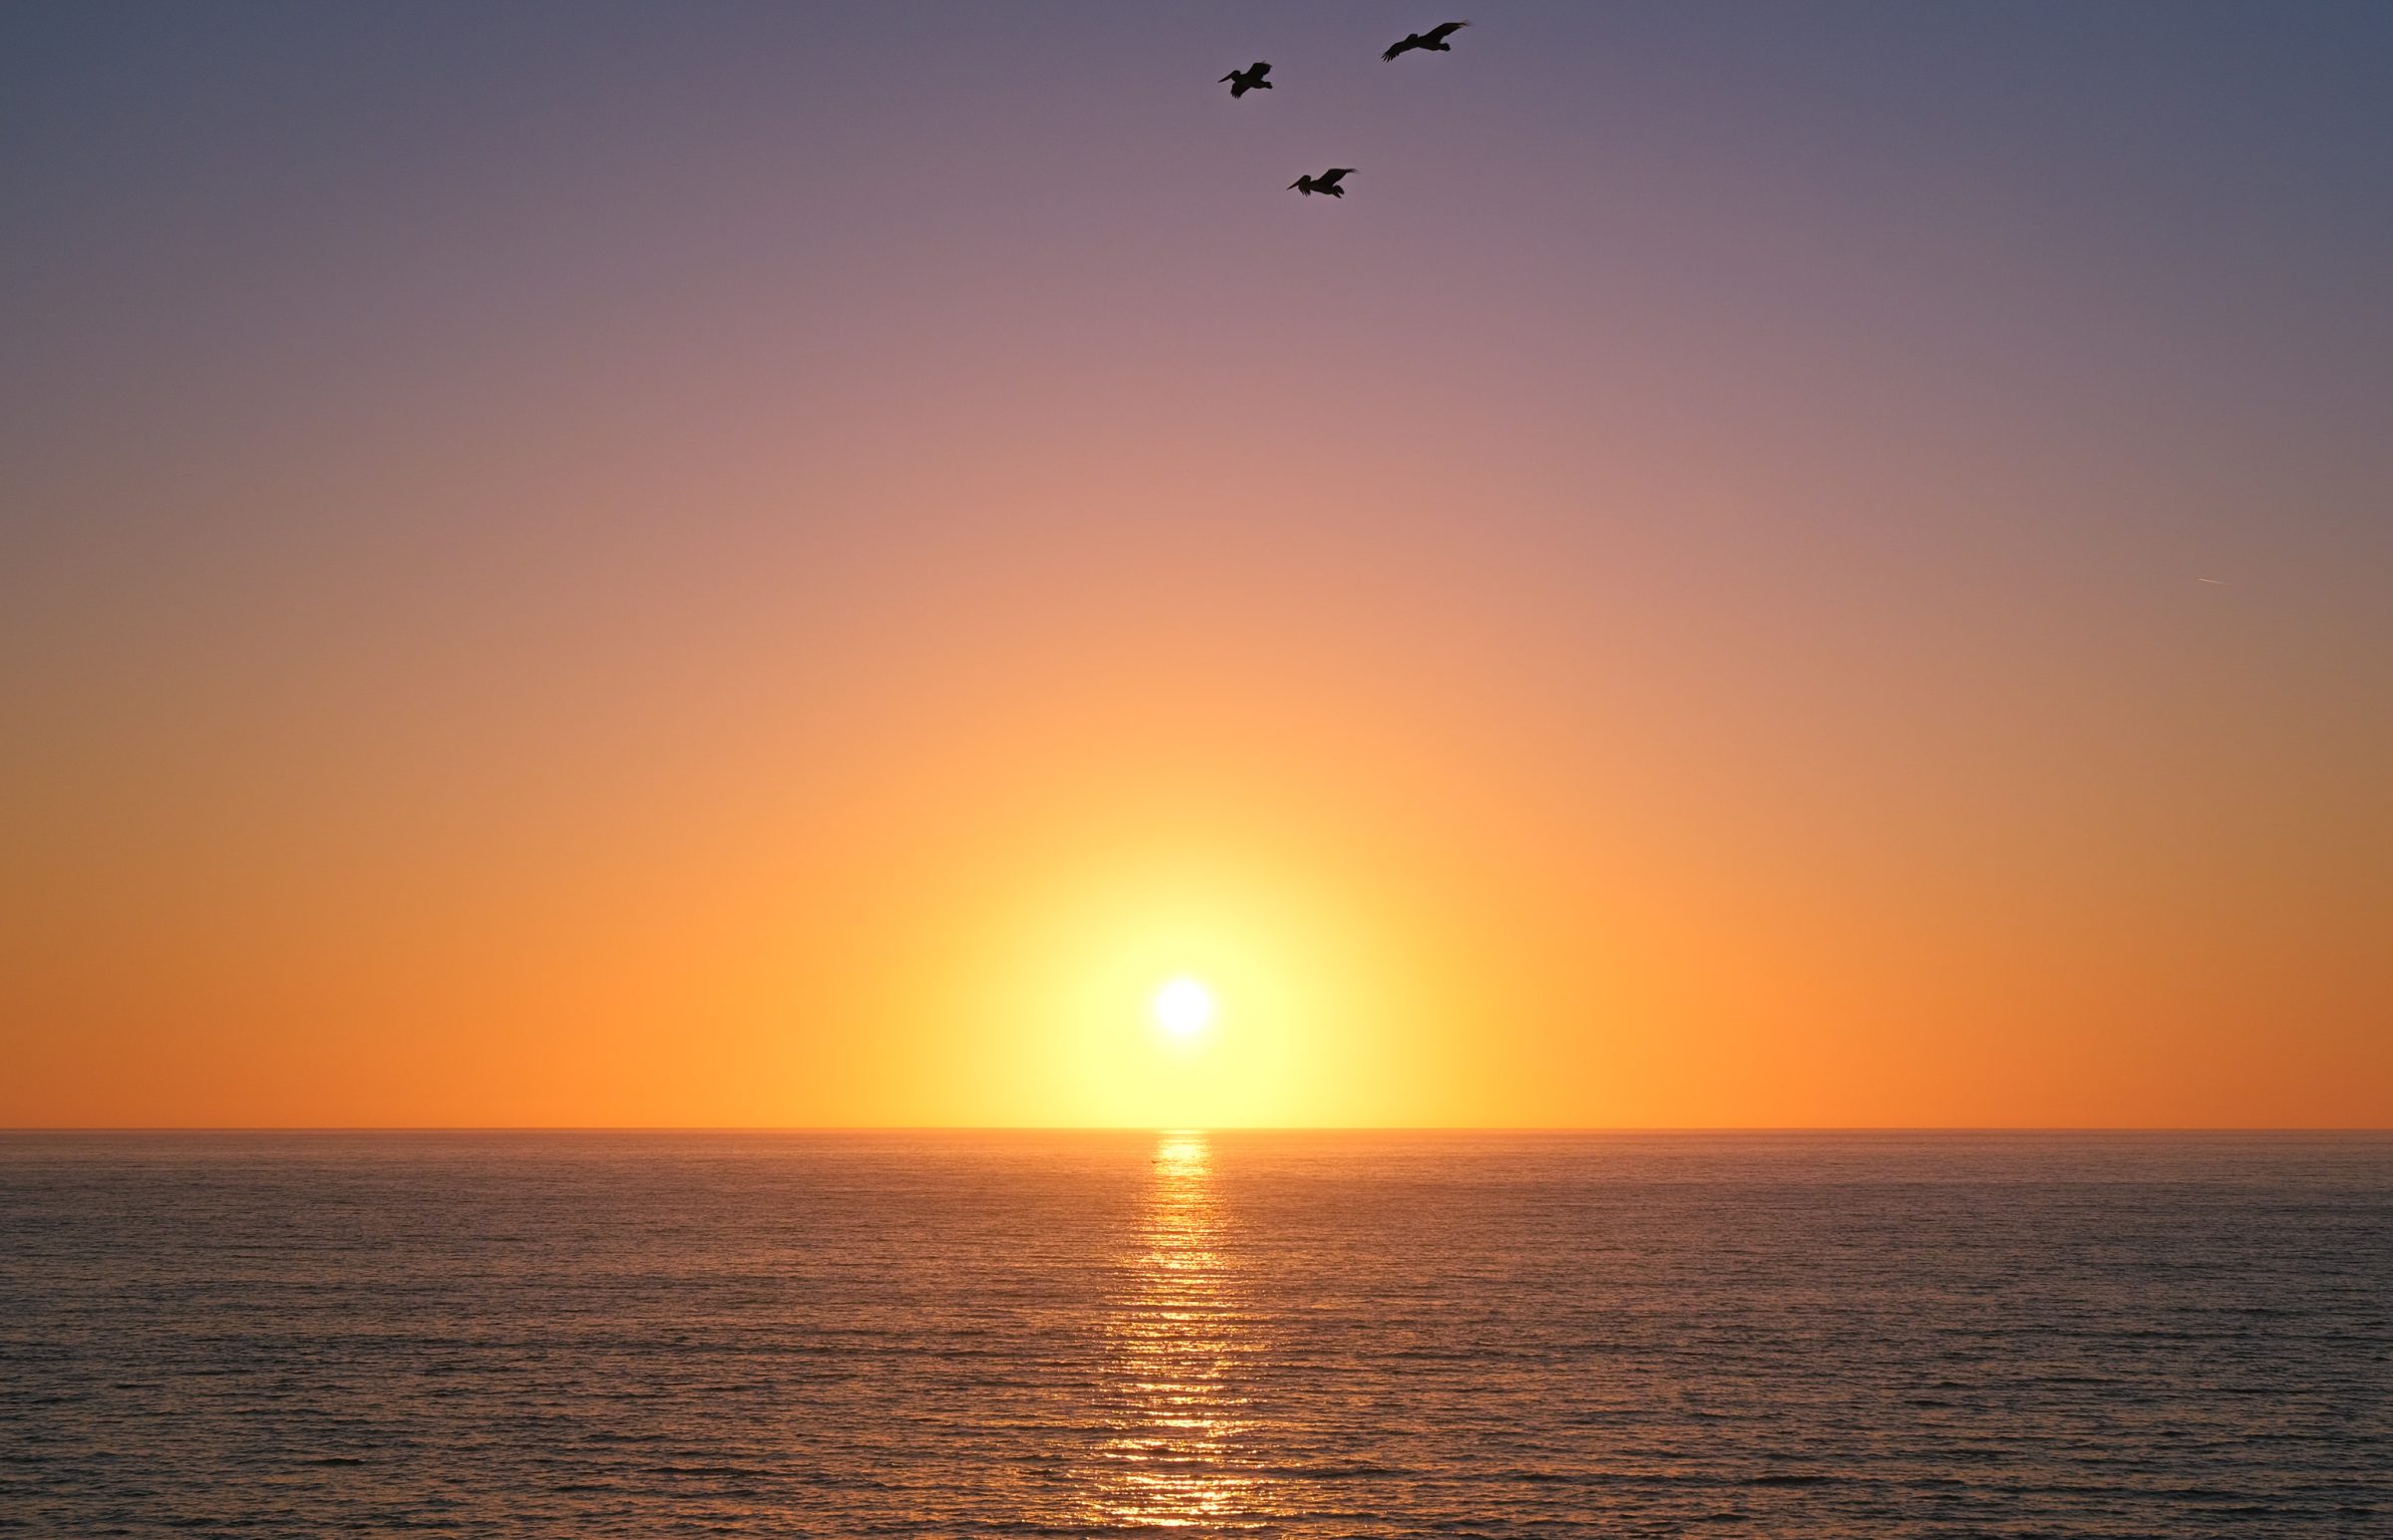 穏やかな海、沈む夕日、頭上を飛ぶペリカン。 究極の静けさ。